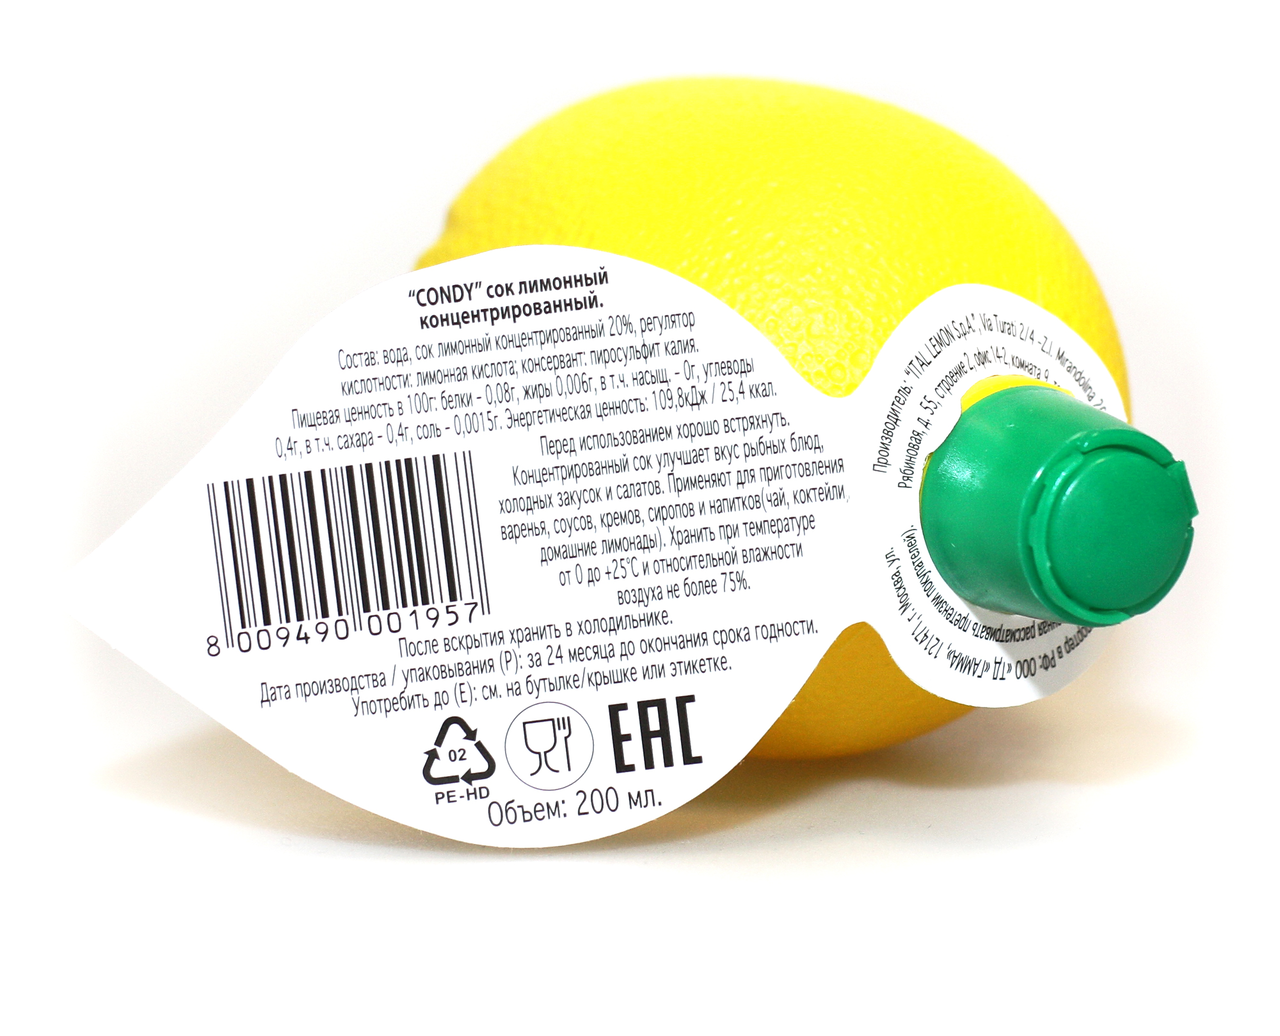 Сок Condy лимонный, концентрированный, 200 мл. Концентрат лимонного сока. Лимонный концентрат 200 мл. Лимонный концентрат мэтро. Концентрат лимона